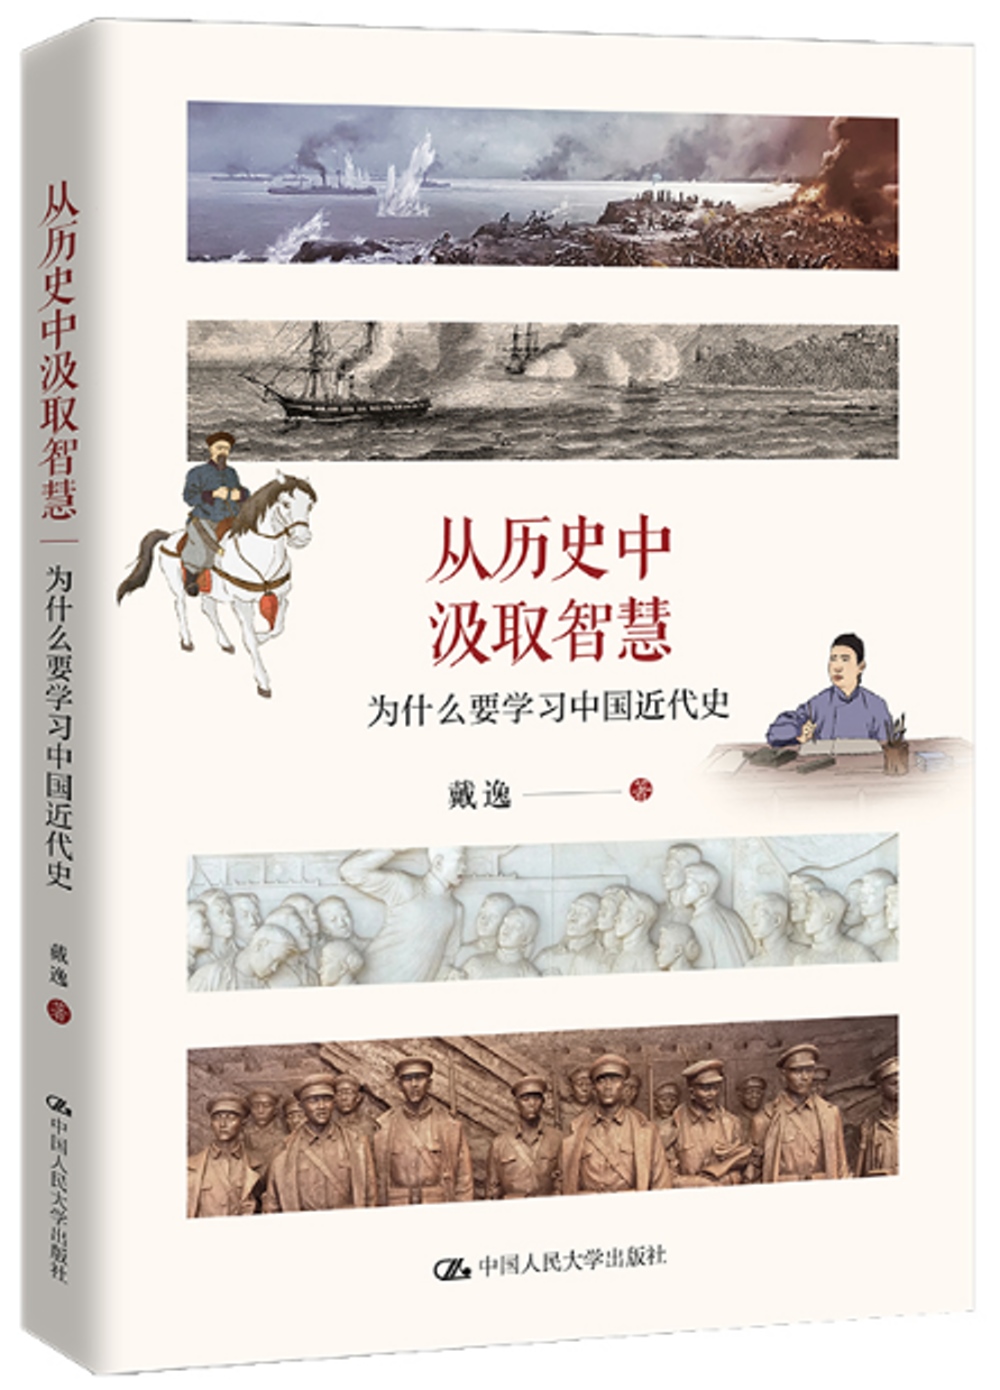 從歷史中汲取智慧：為什麼要學習中國近代史